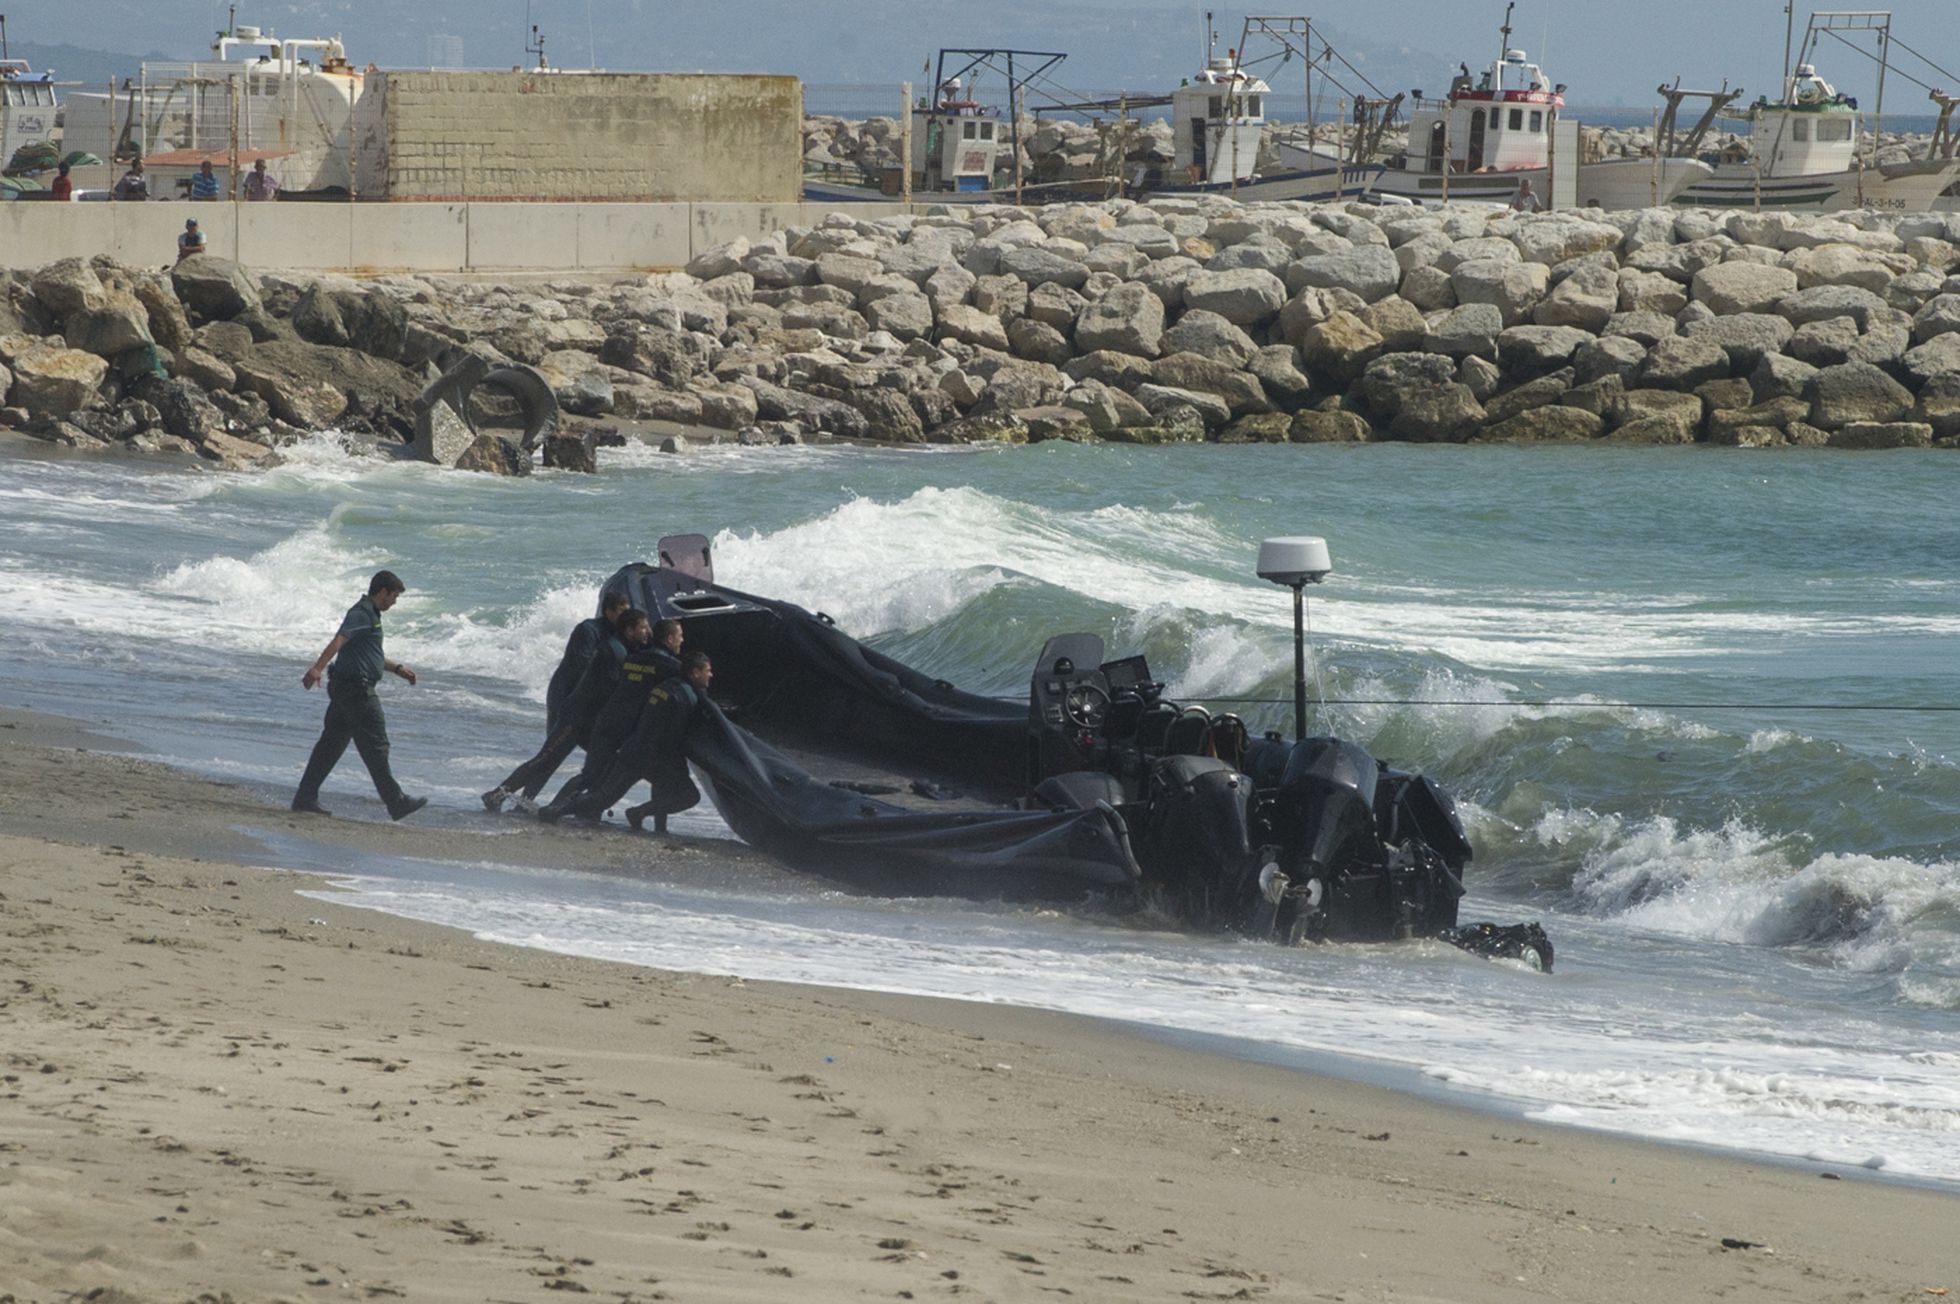 La Guardia Civil se incauta de una lancha de los narcos, que abandonaron después de una persecución en la playa del Tonelero, La Atunara. 